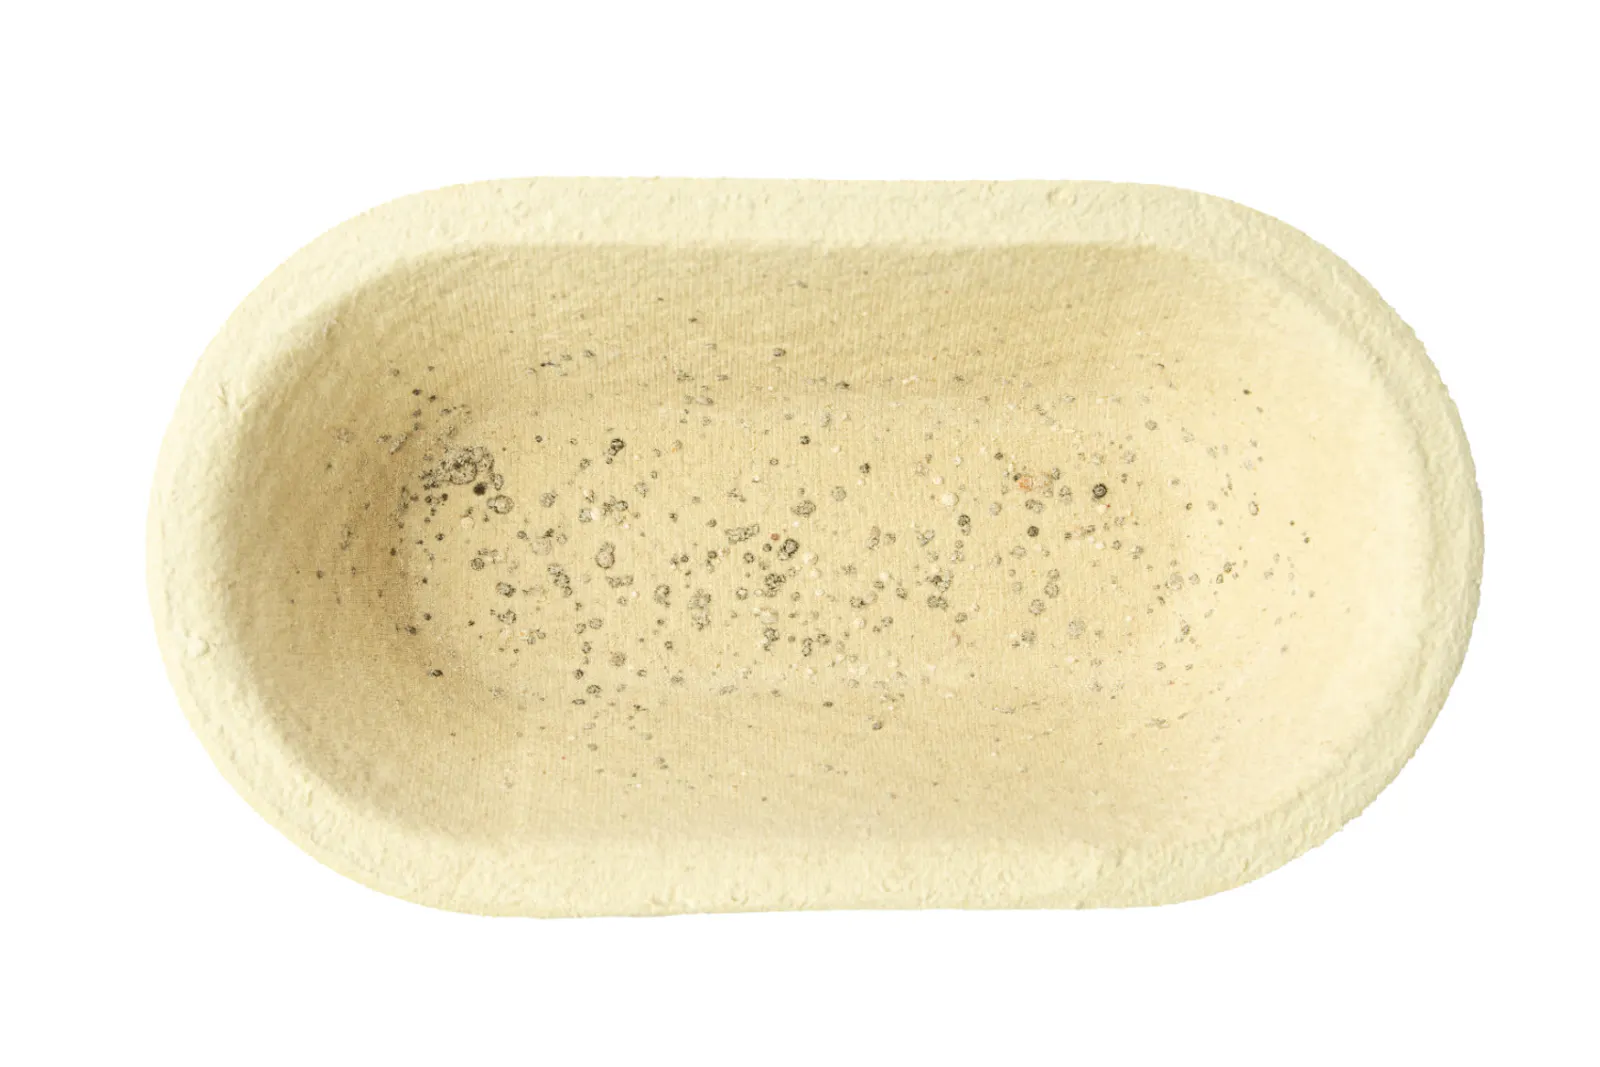 Von mikrobiellen Kolonien besiedelter Gärkorb (Länge Boden: 17 cm, Länge Öffnung mit Rand: 26 cm).